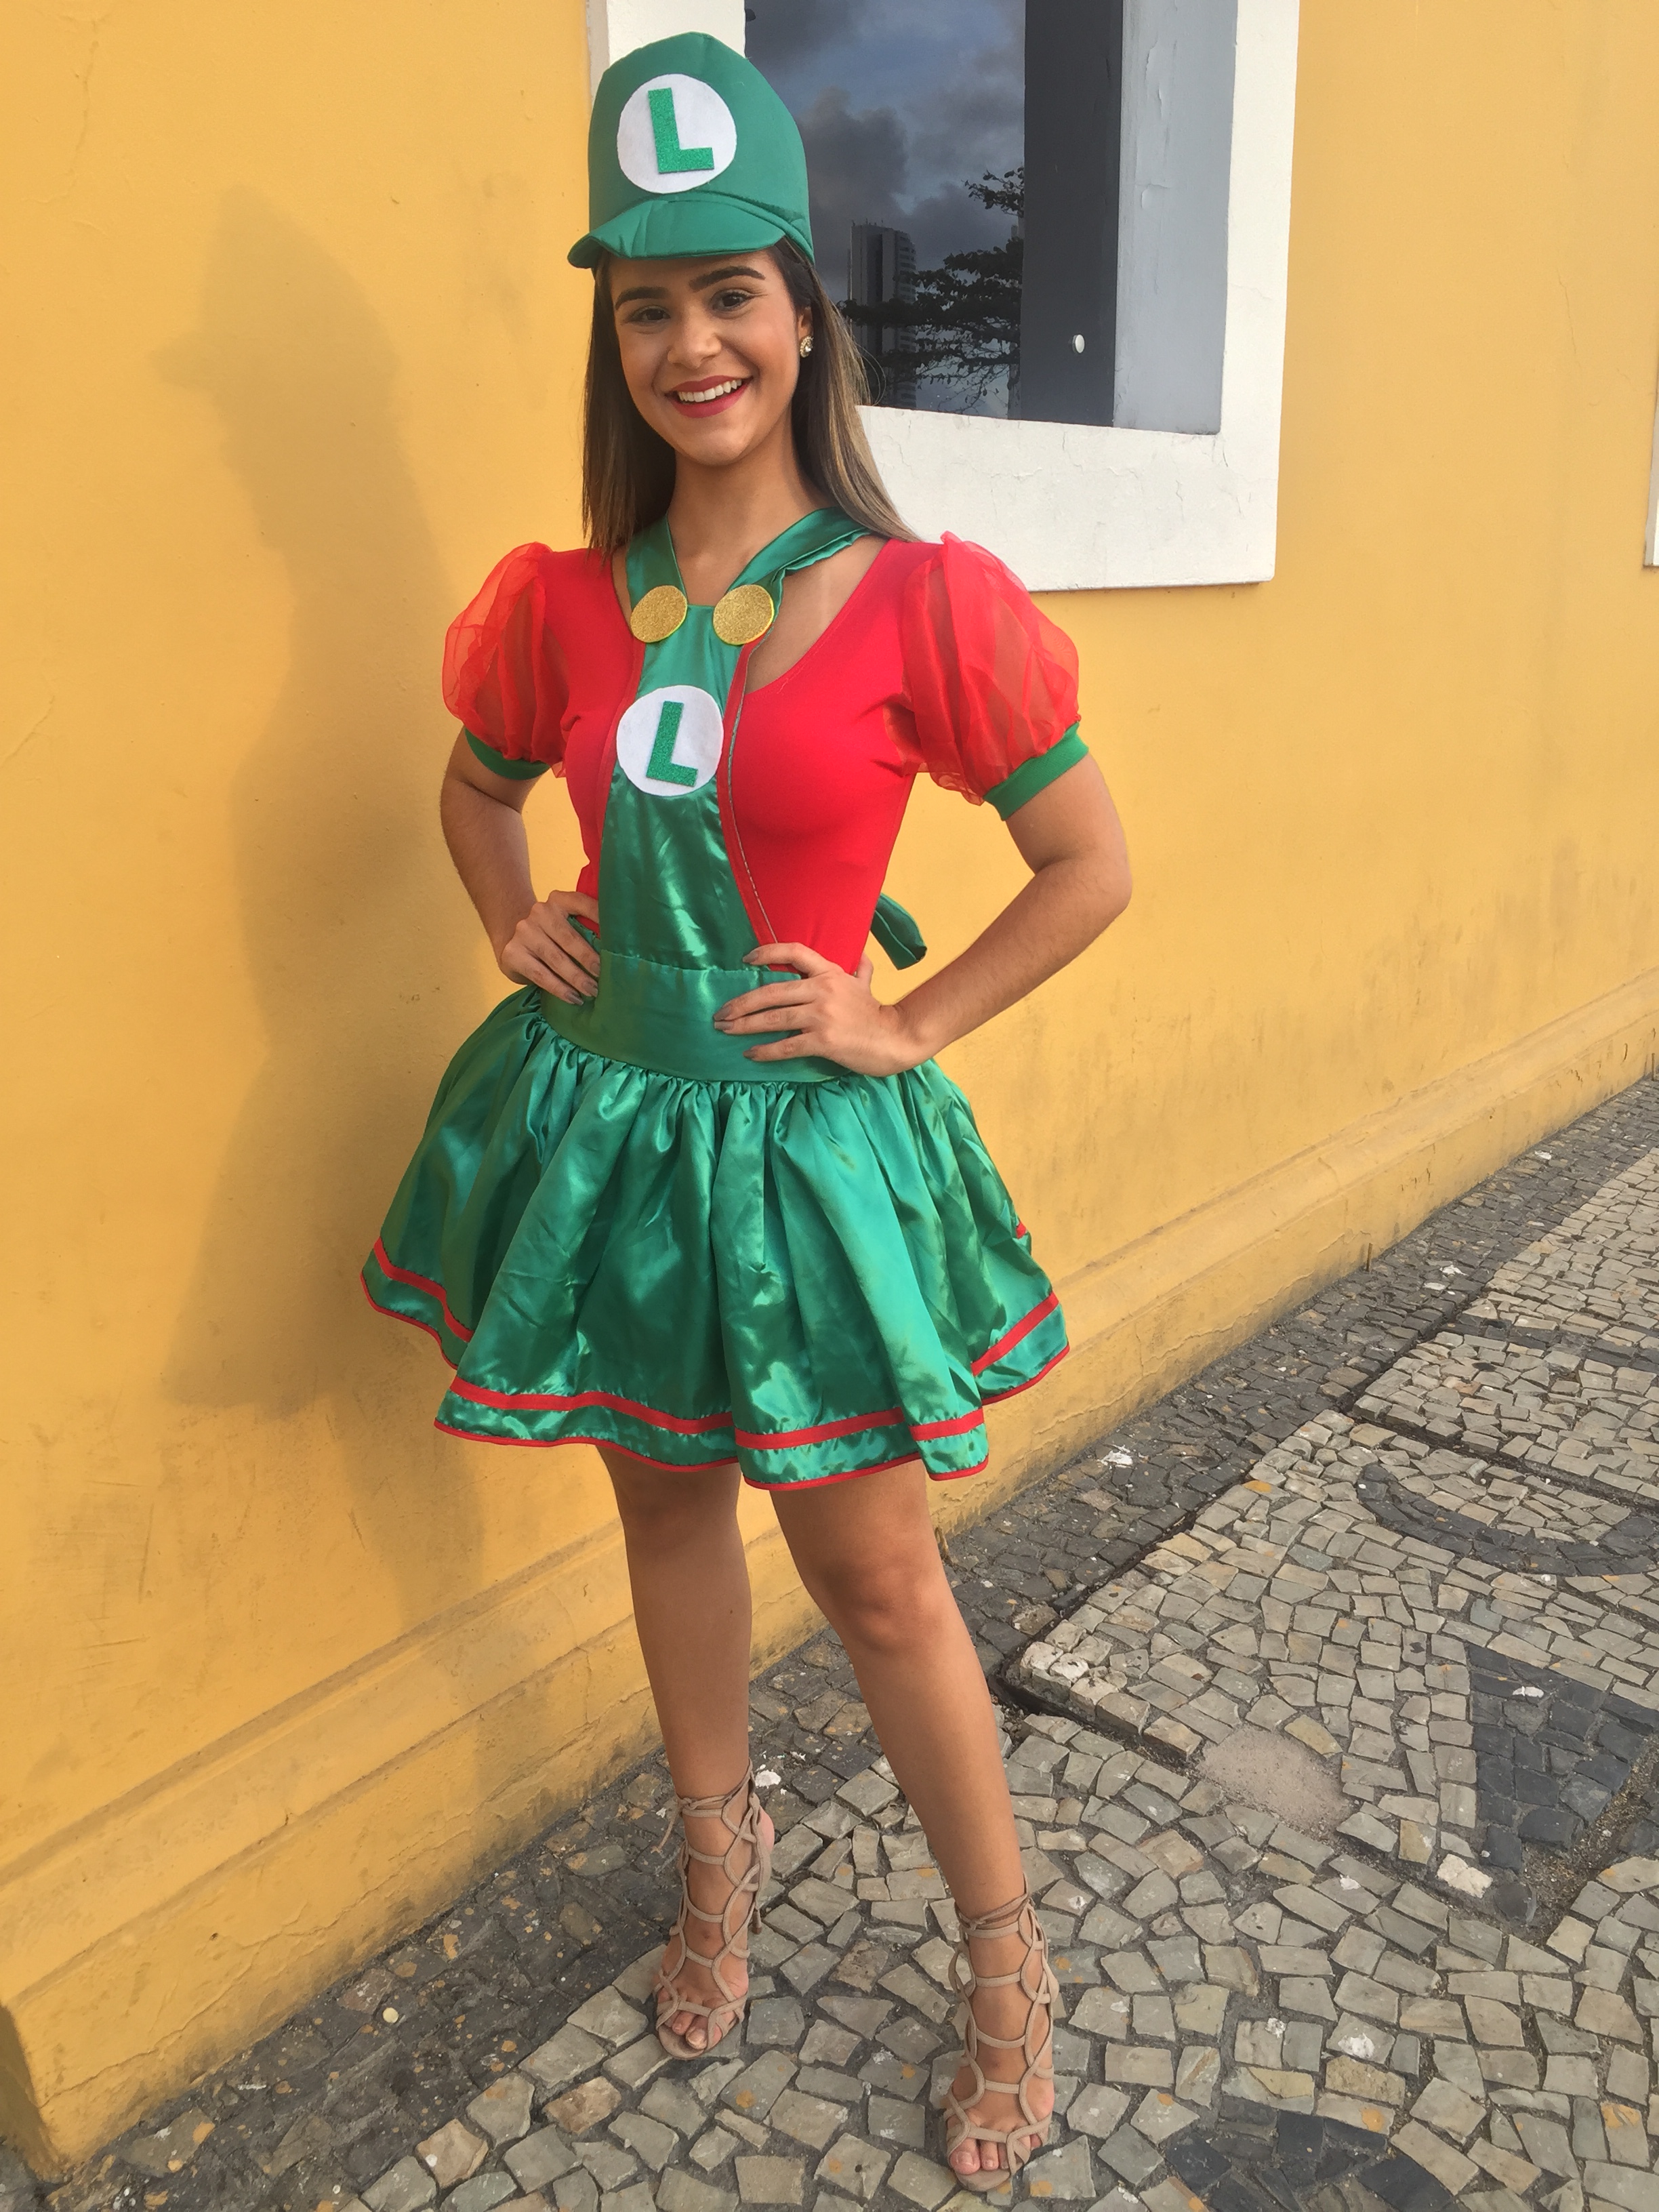 Fantasia de Luigi, da turma do Mario Bros, disponível para aluguel ou venda na loja Fantasias Recife - Crédito: Thayse Boldrini/DP